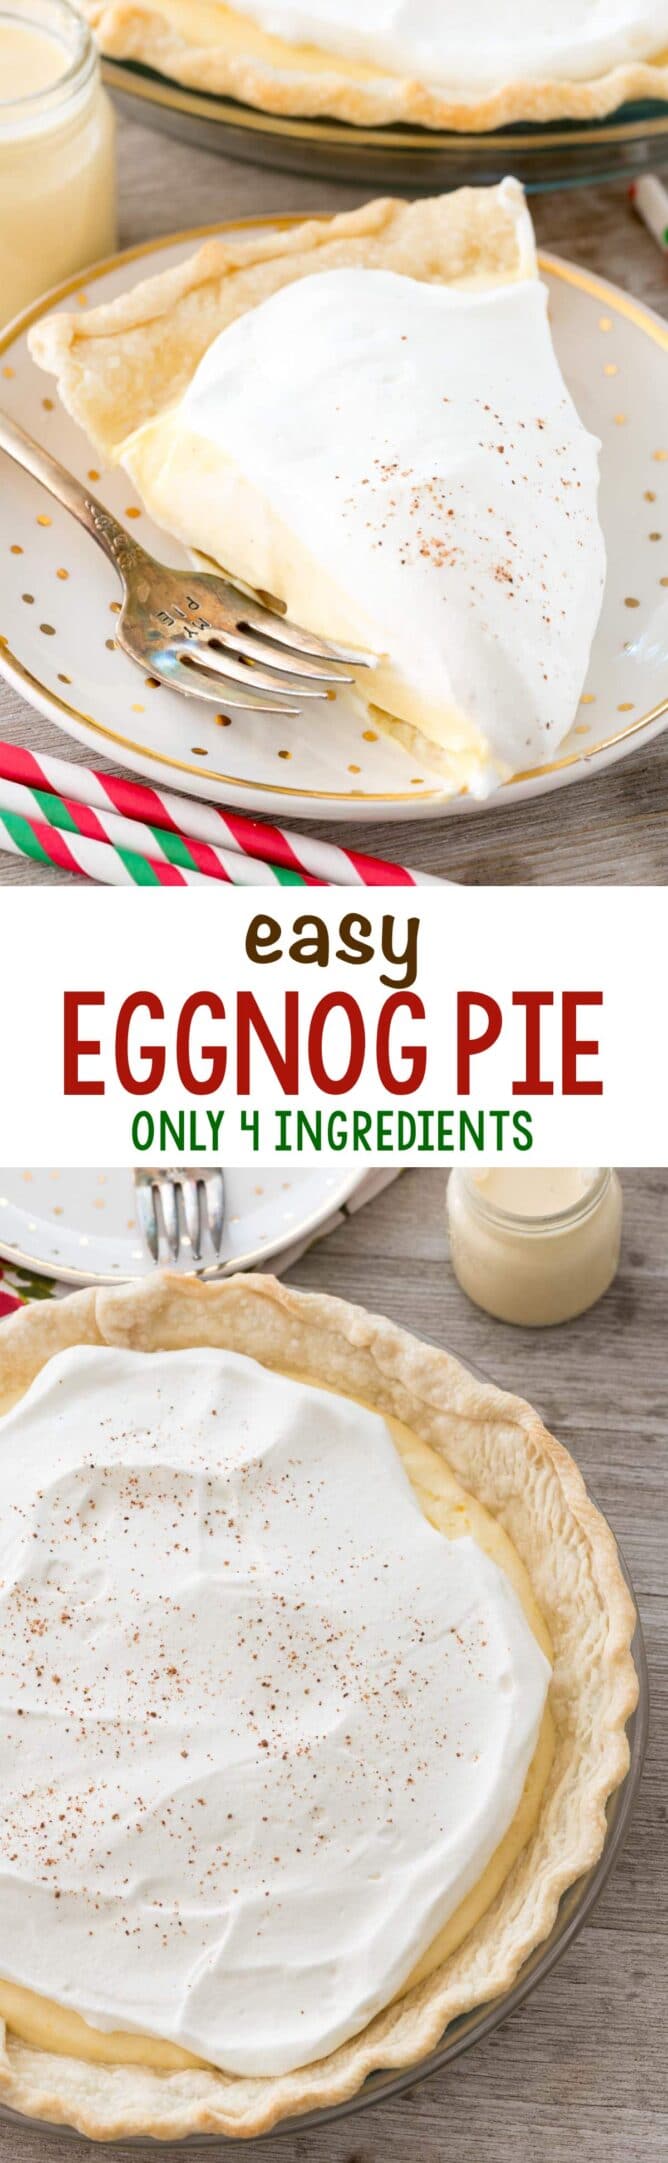 eggnog pie photos